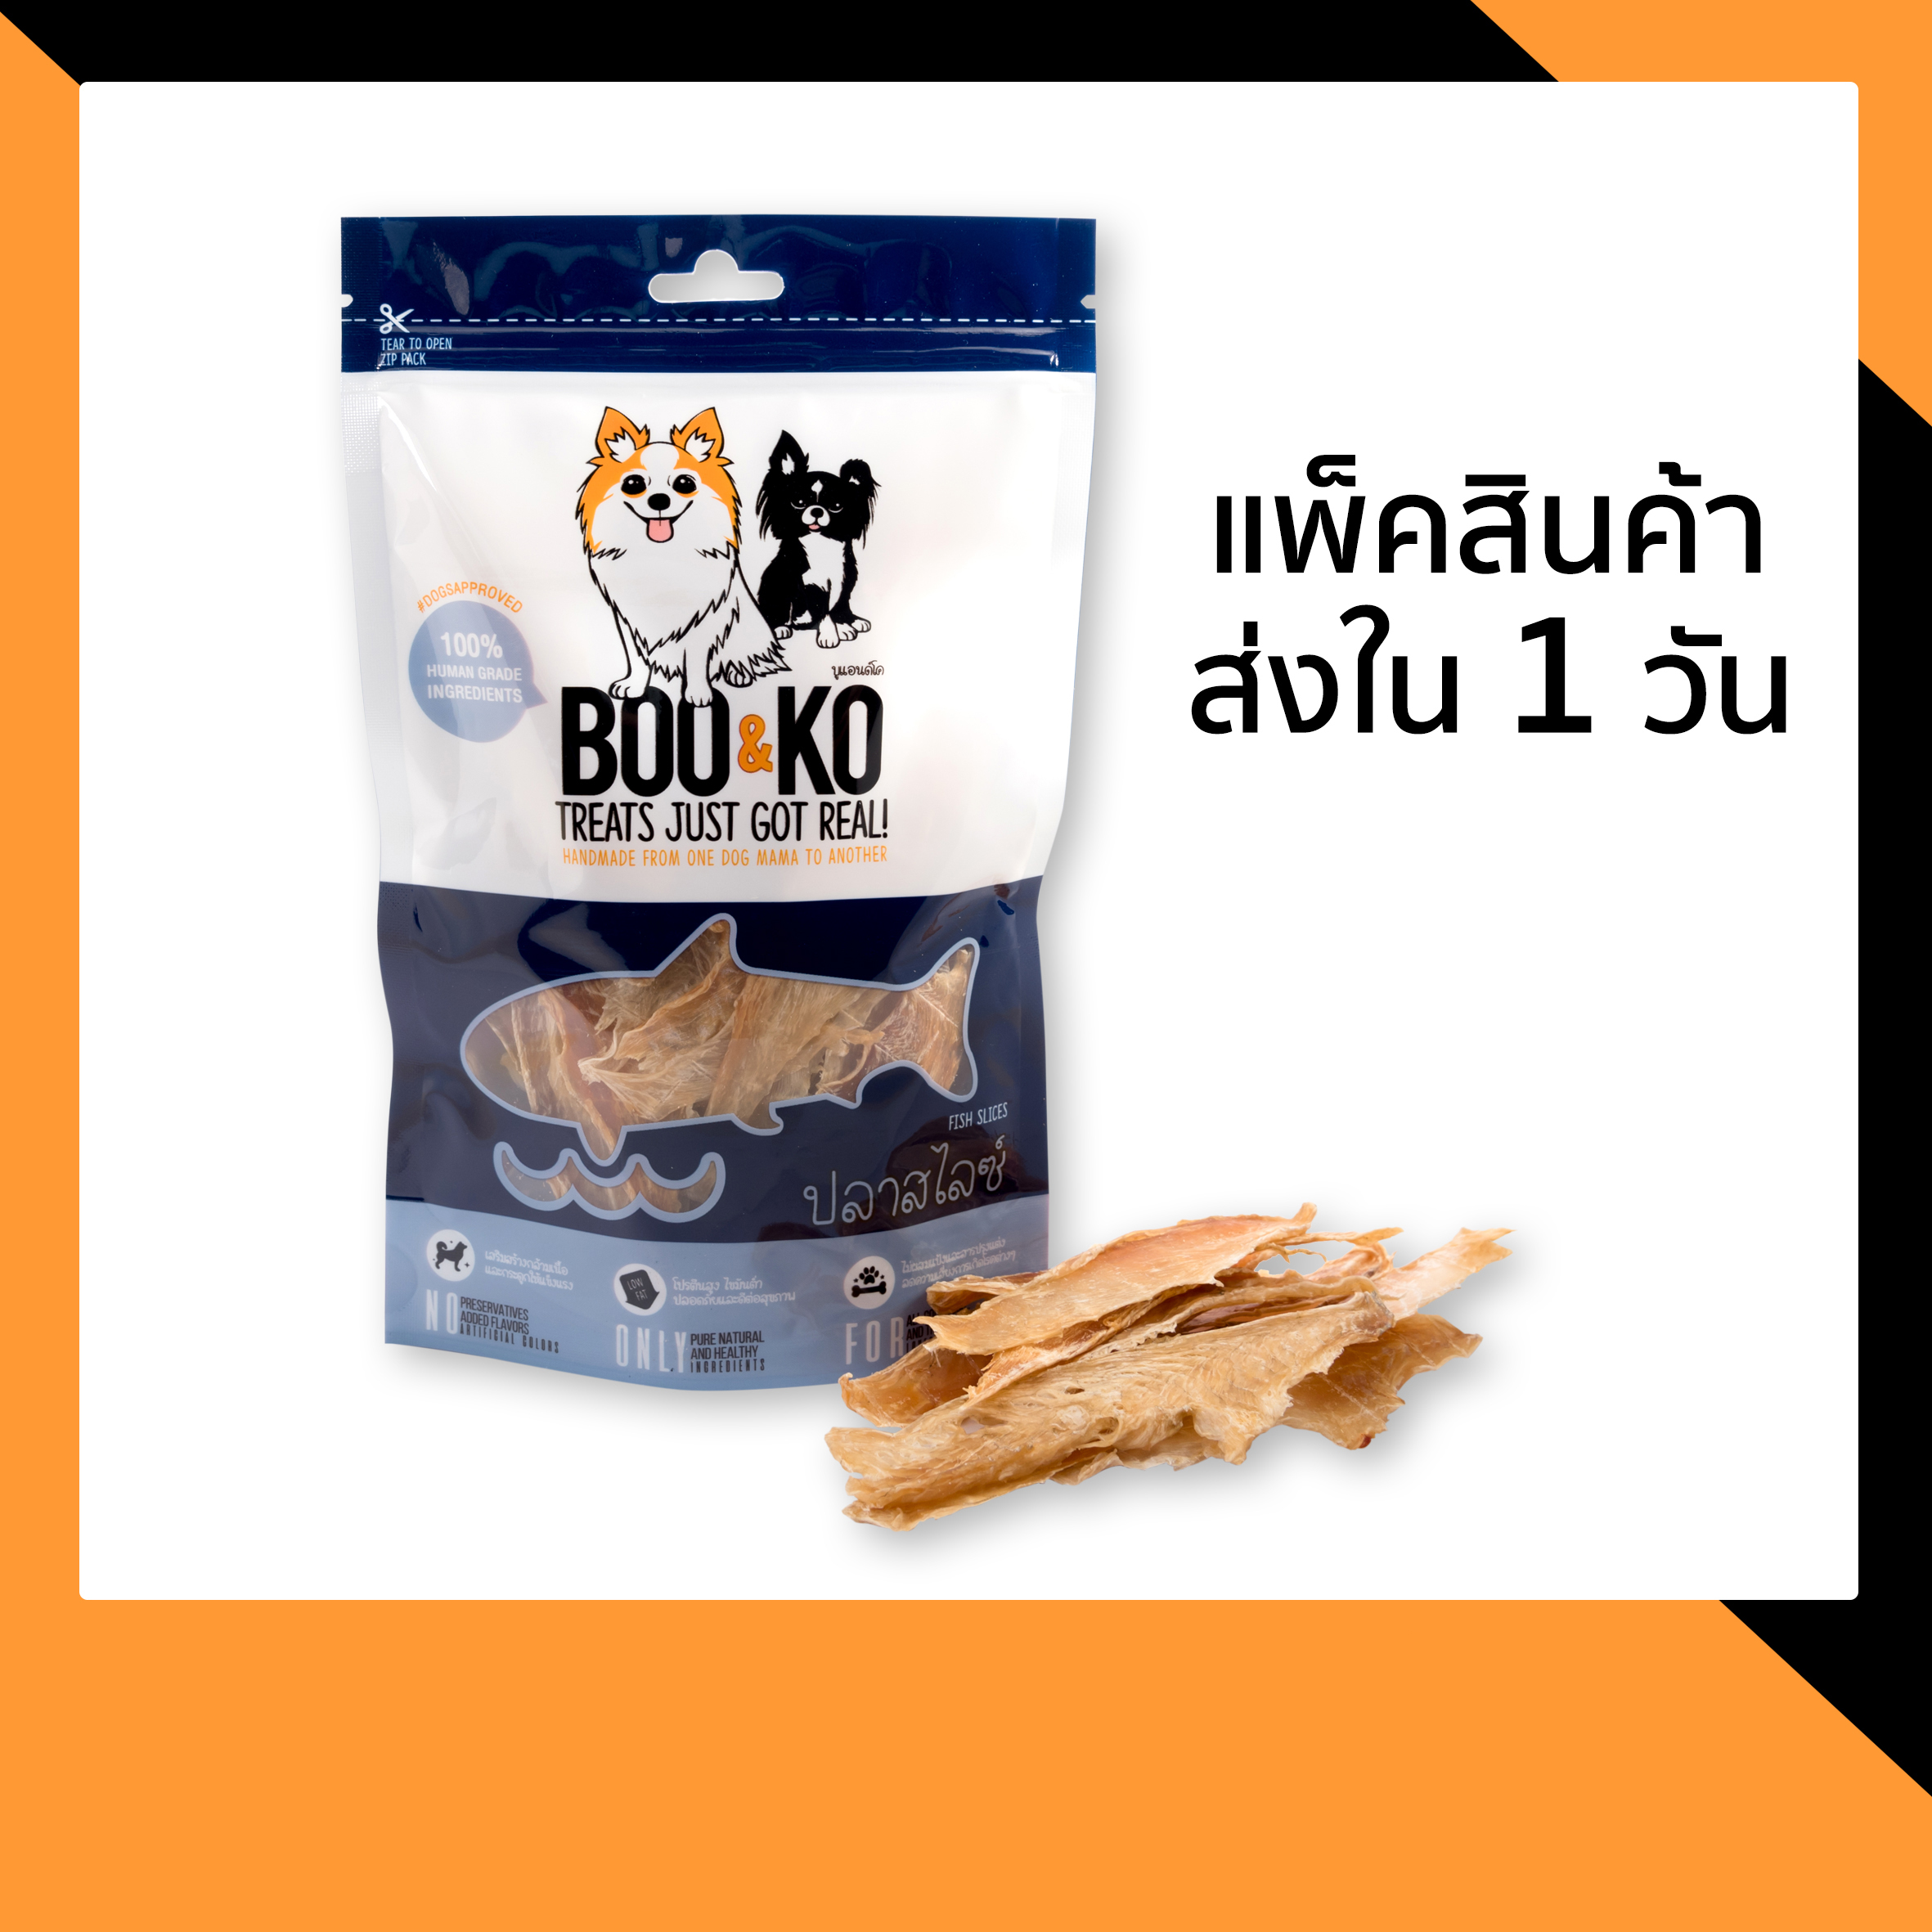 BOO&KO ขนมสุนัข เนื้อปลาอบแห้ง 50 กรัม